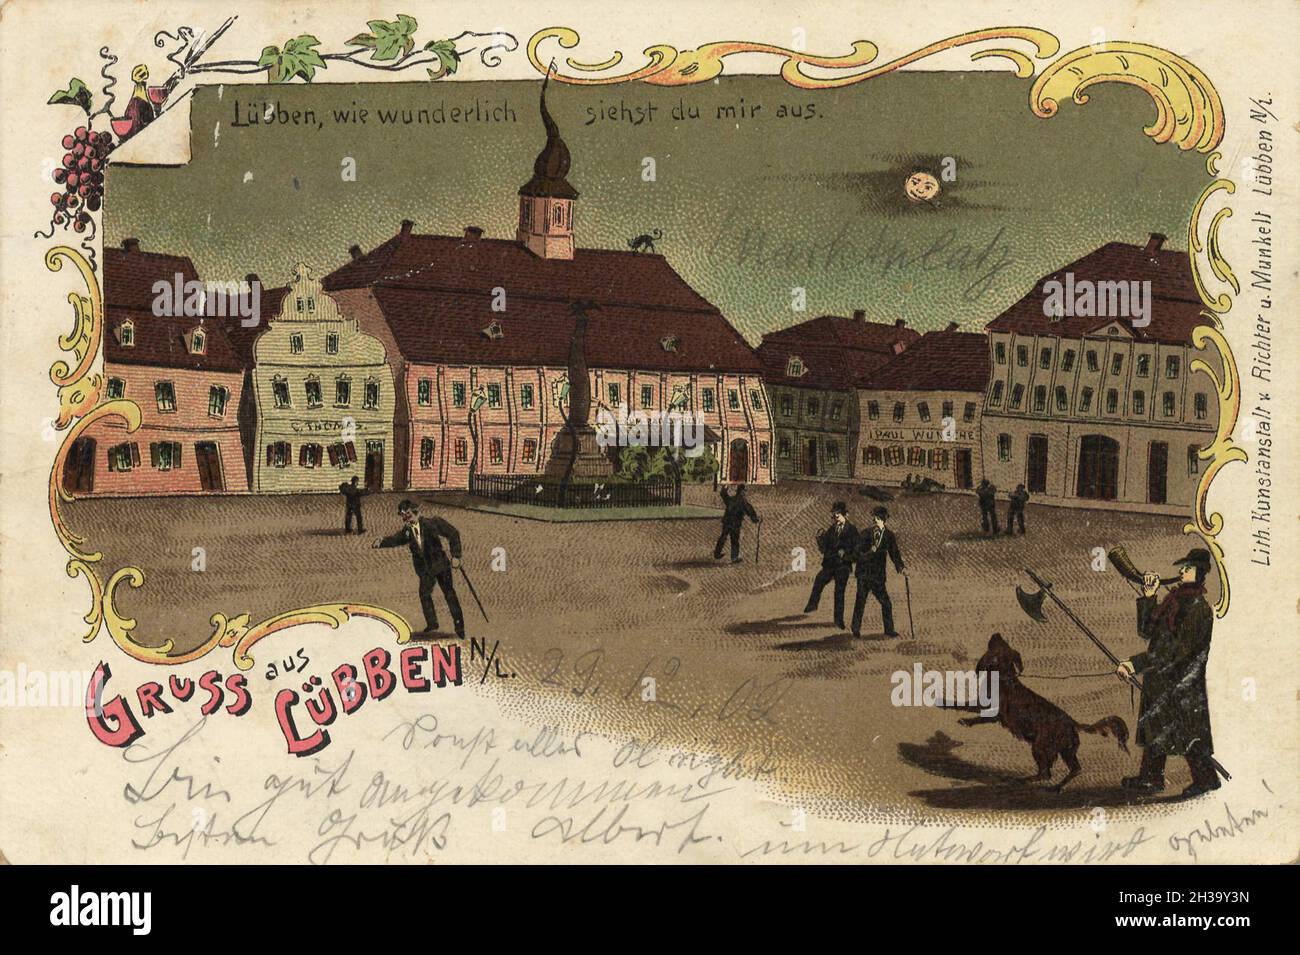 Lübben, Landkreis Dahme-Spreewald in der Niederlausitz im Land Brandenburg, Deutschland, Ansicht von ca 1910, digitale Reproduktion einer gemeinfreien Postkarte Foto Stock